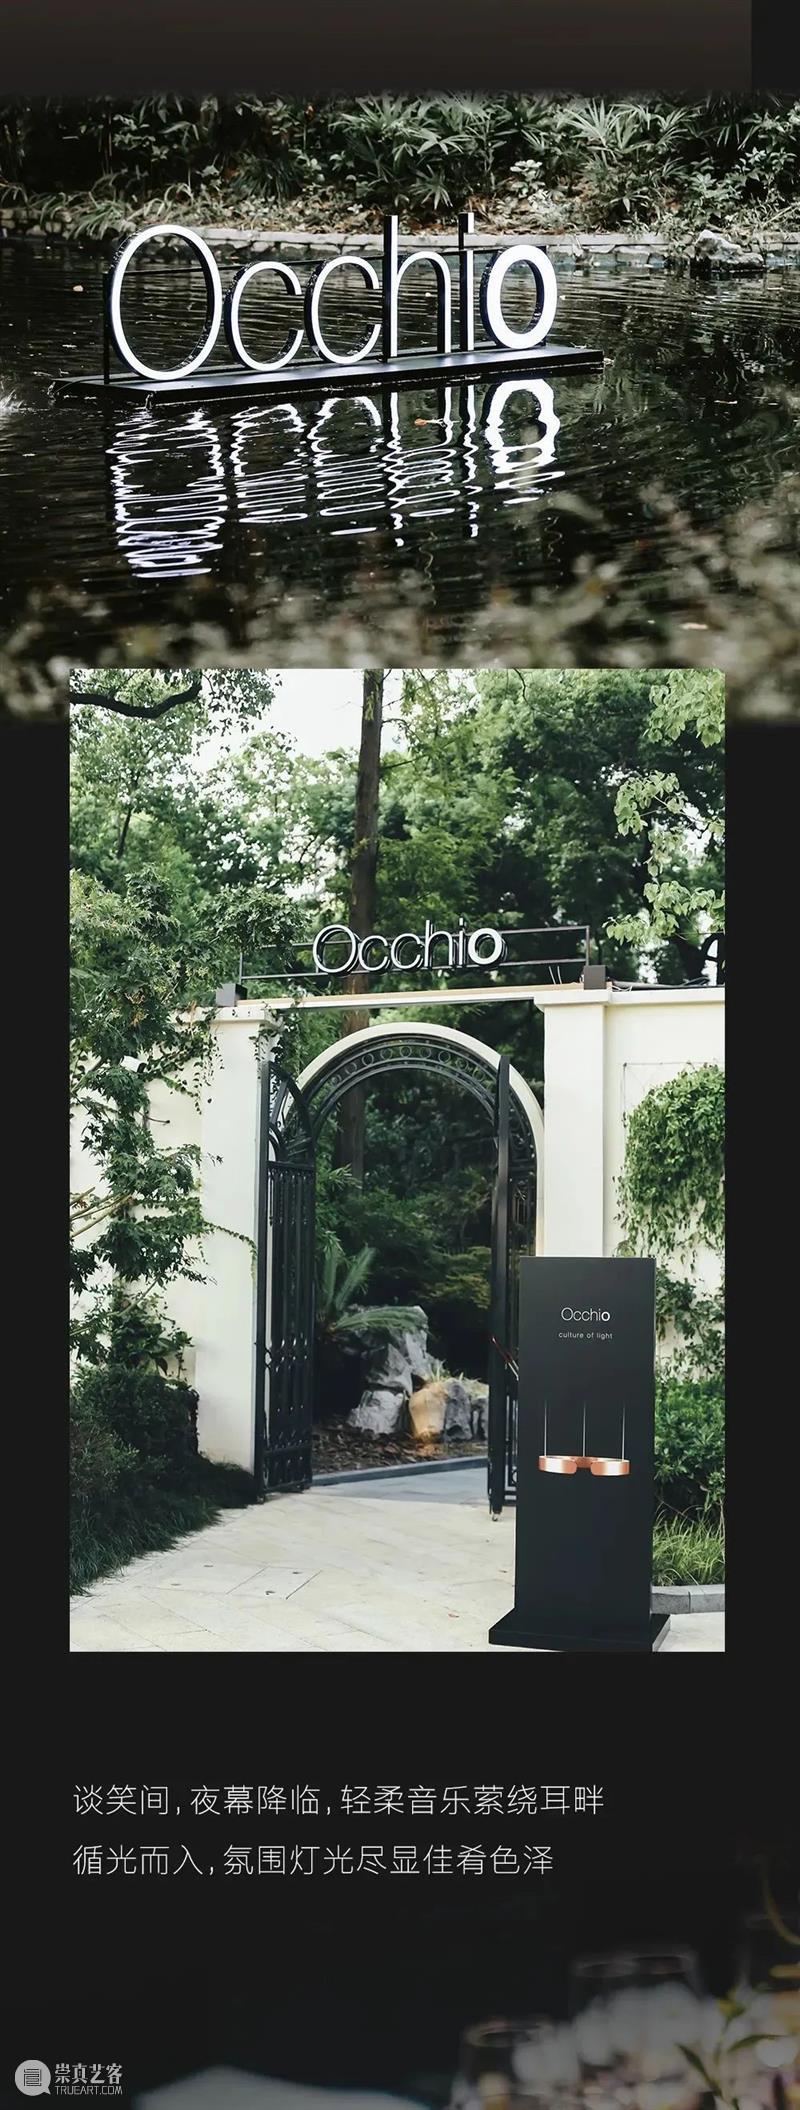 Occhio丨至此，点亮光的新篇章 视频资讯 设计上海 崇真艺客